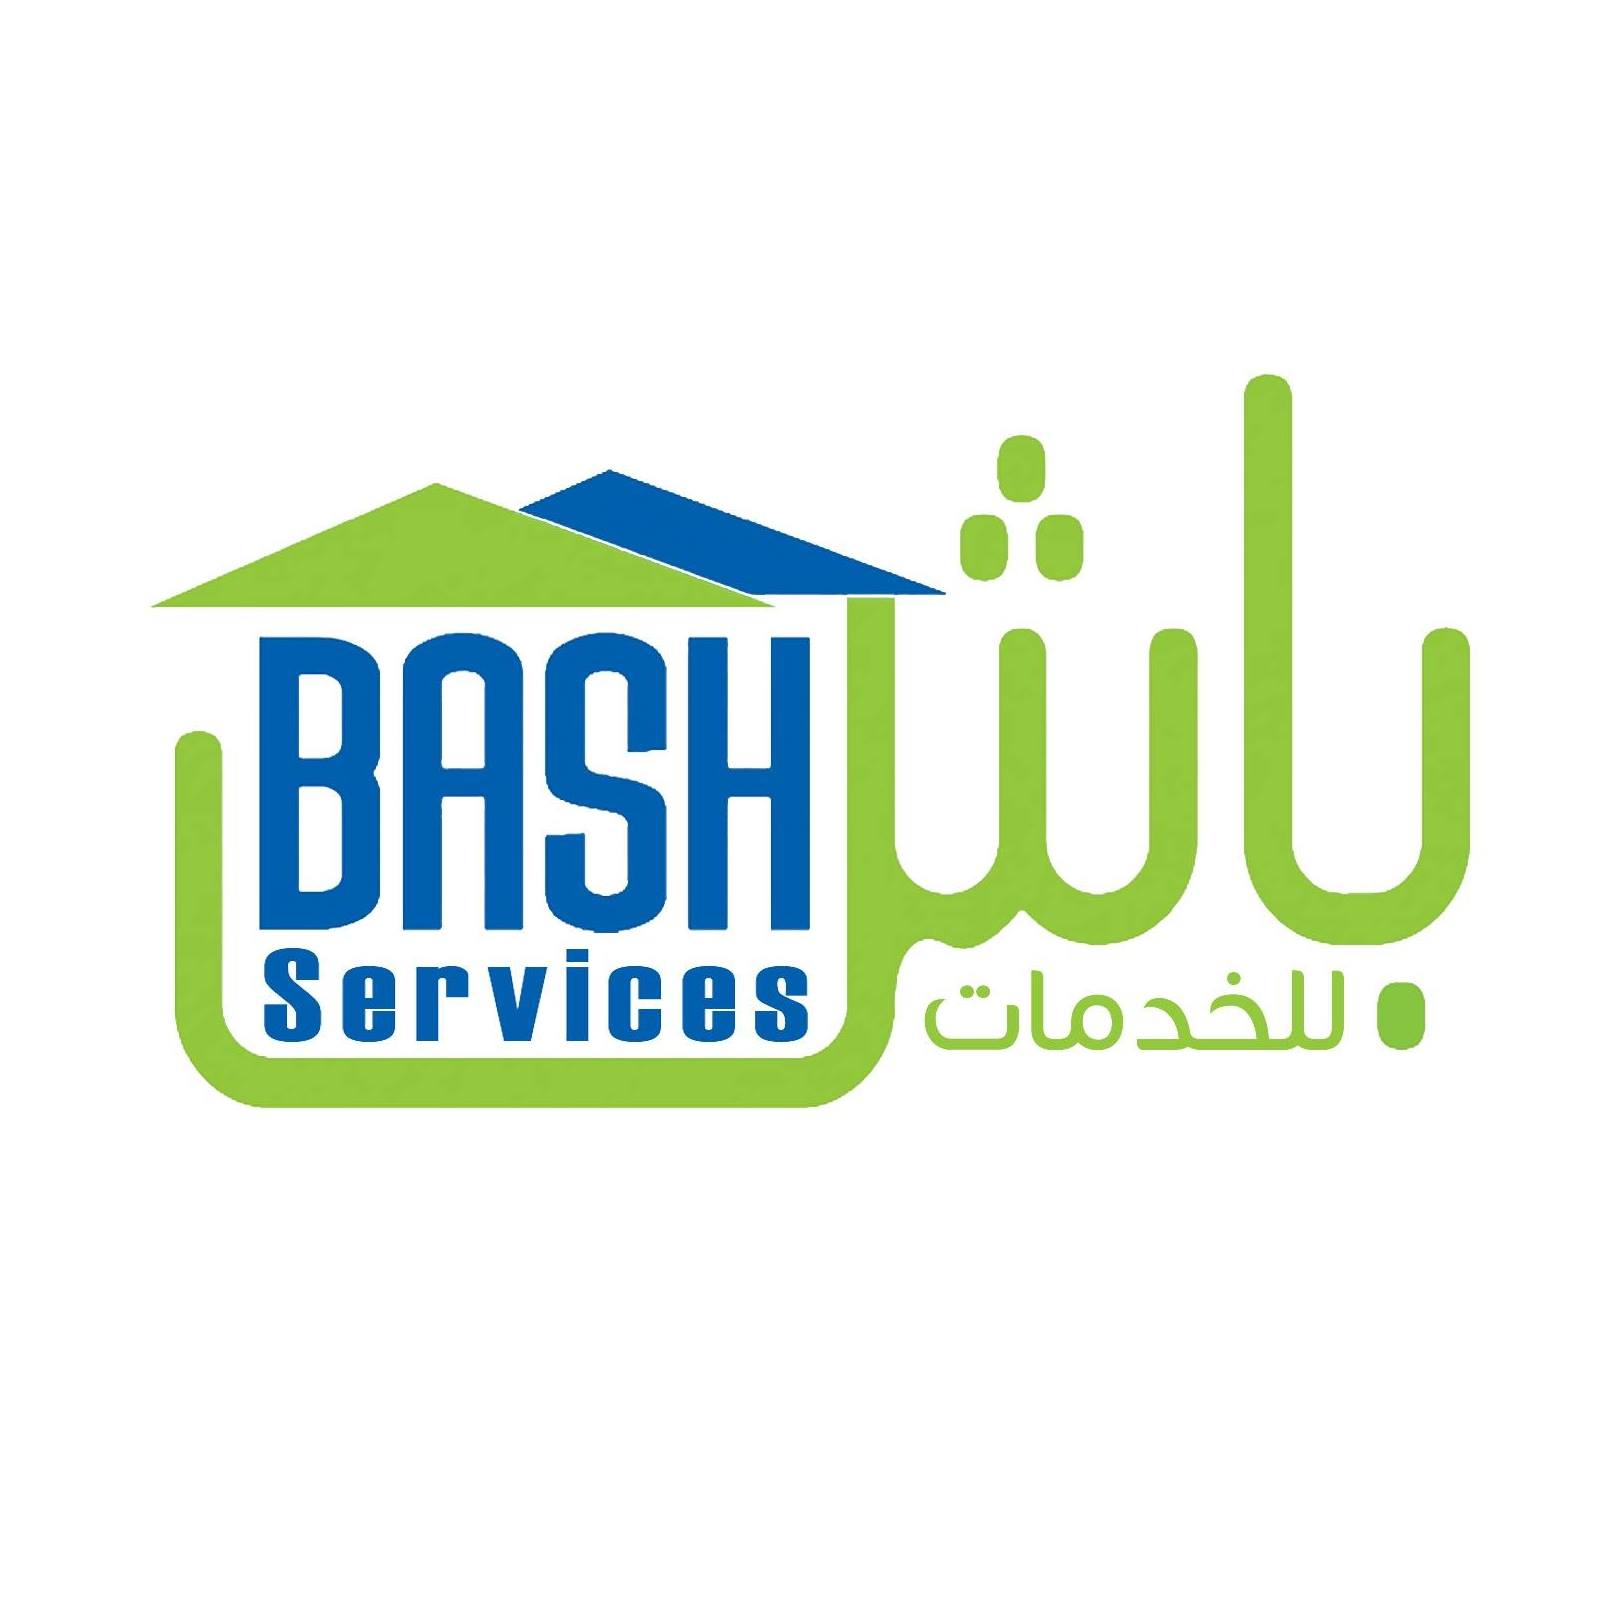 فرصة عمل في الأردن لدى شركة باش للخدمات: مهندس مبيعات زراعية